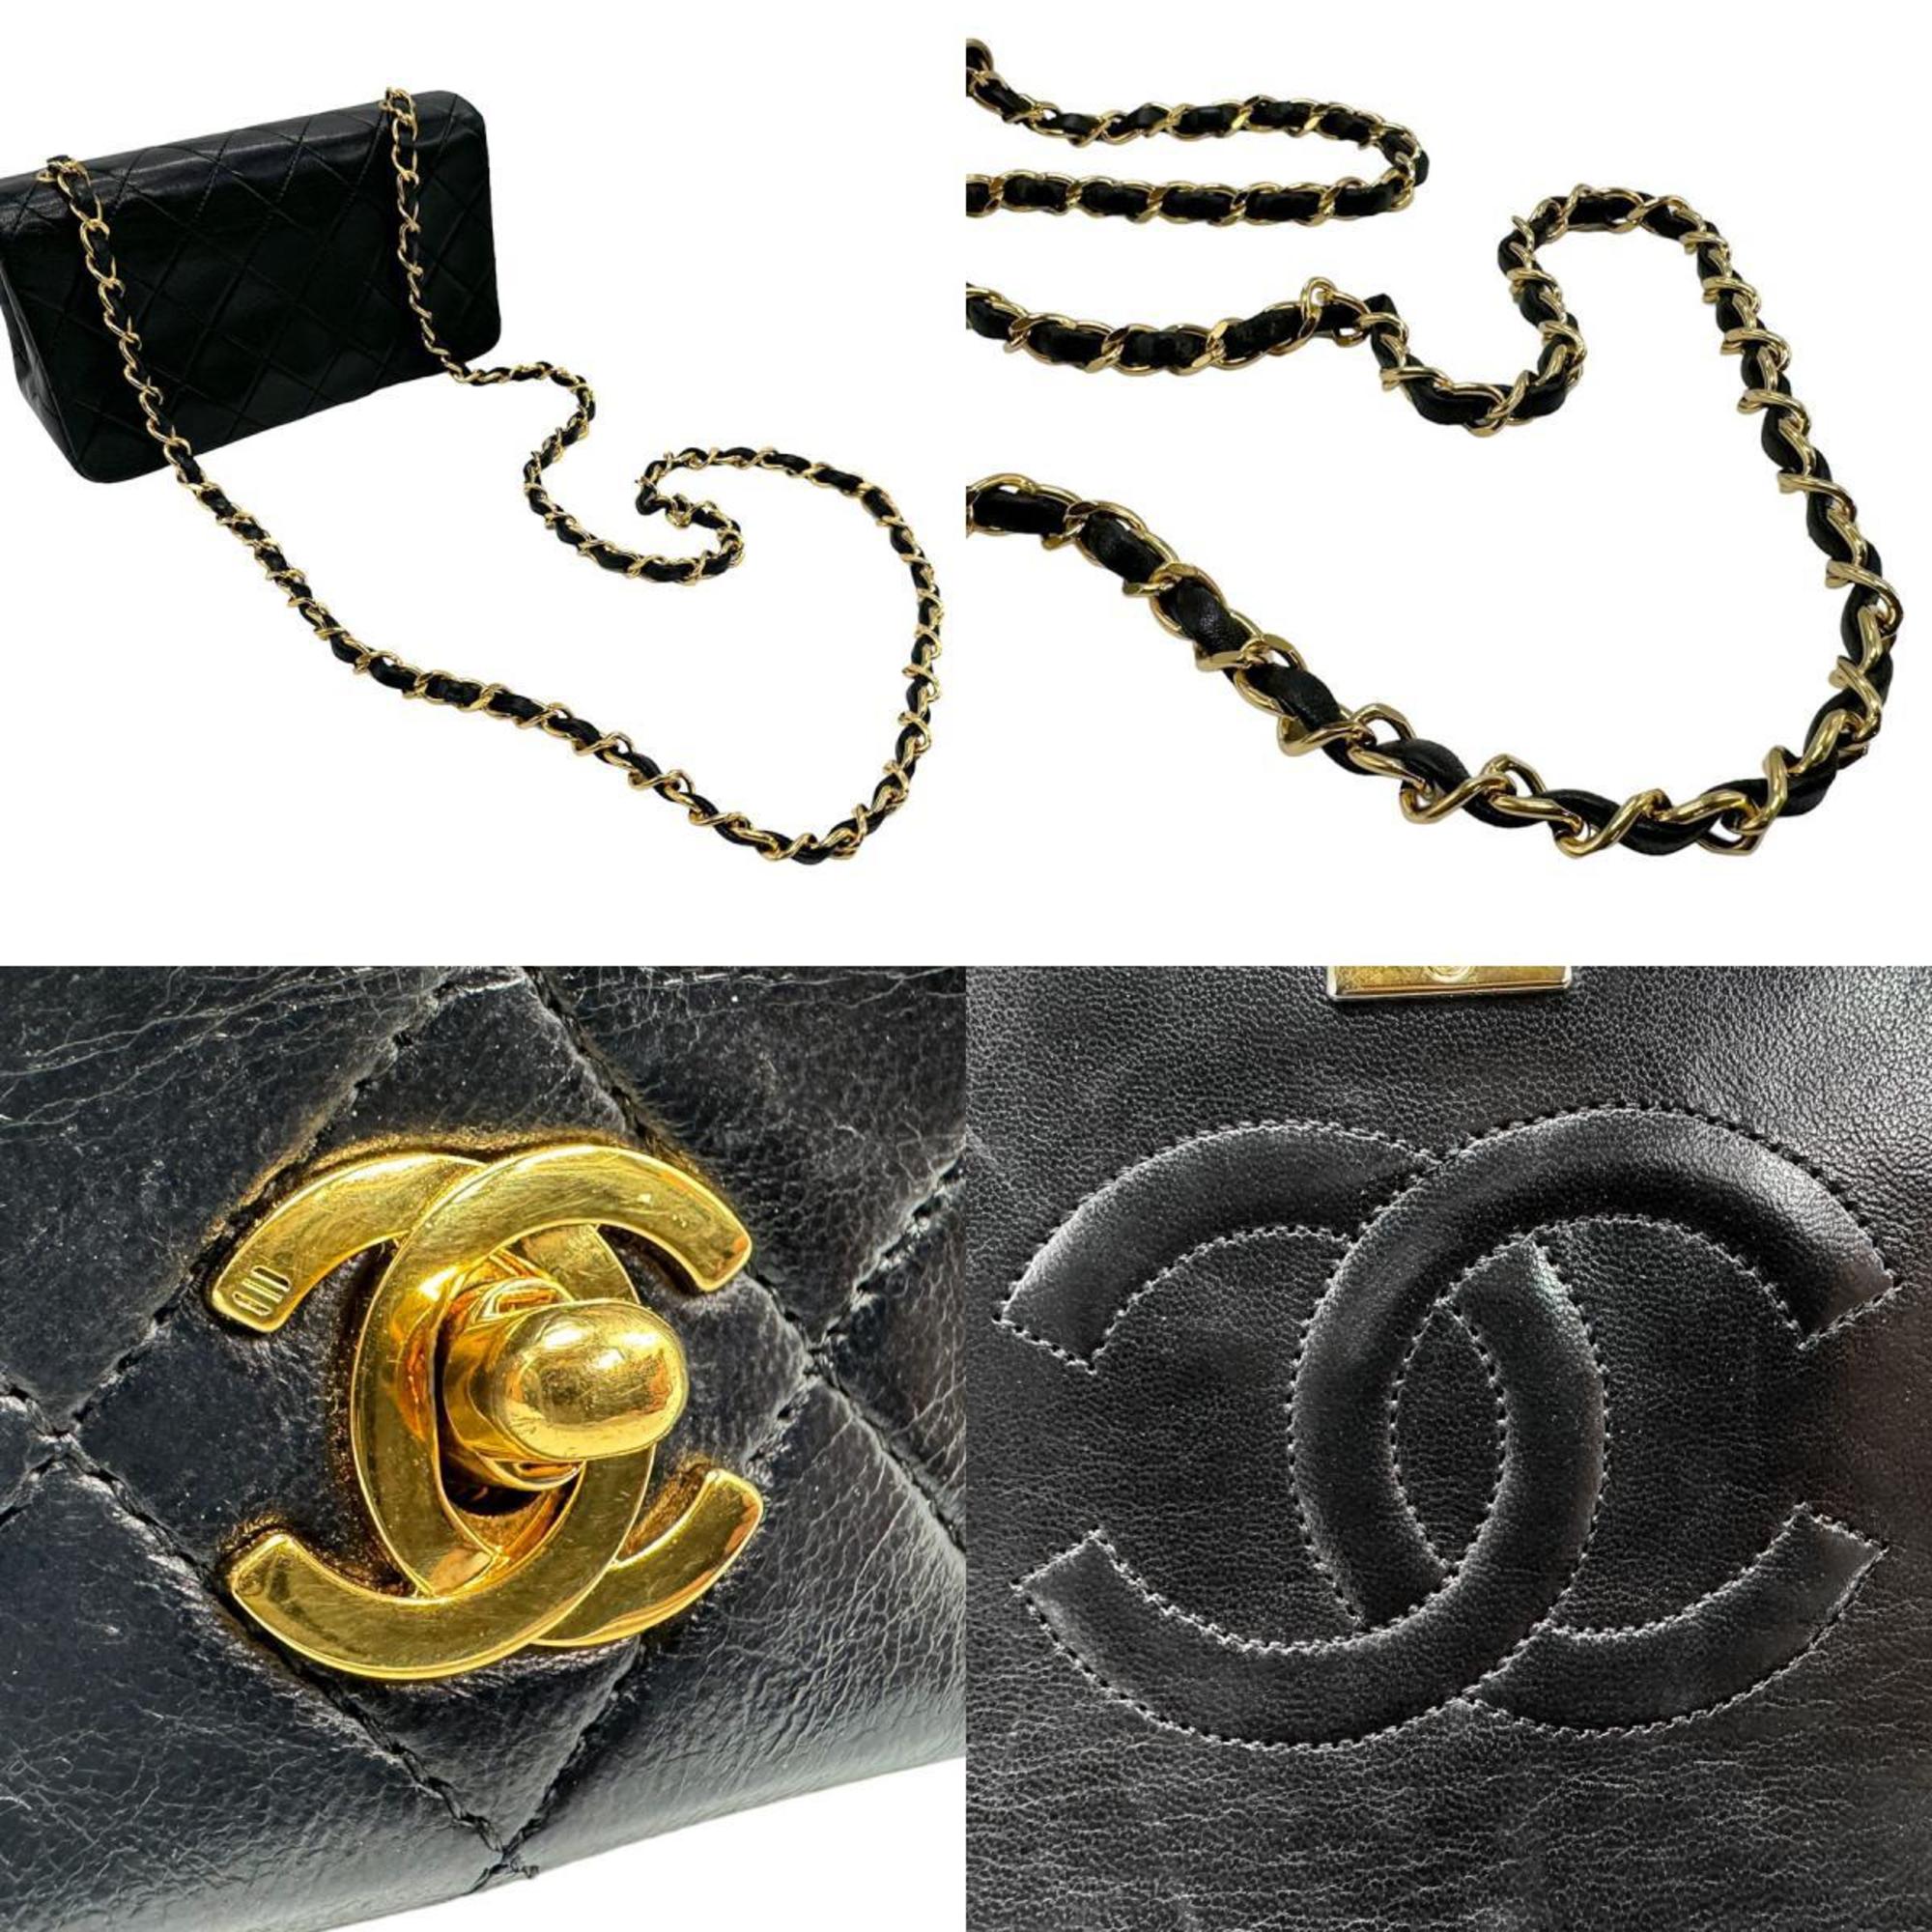 CHANEL Shoulder Bag Matelasse Leather Metal Black Gold Women's z1587